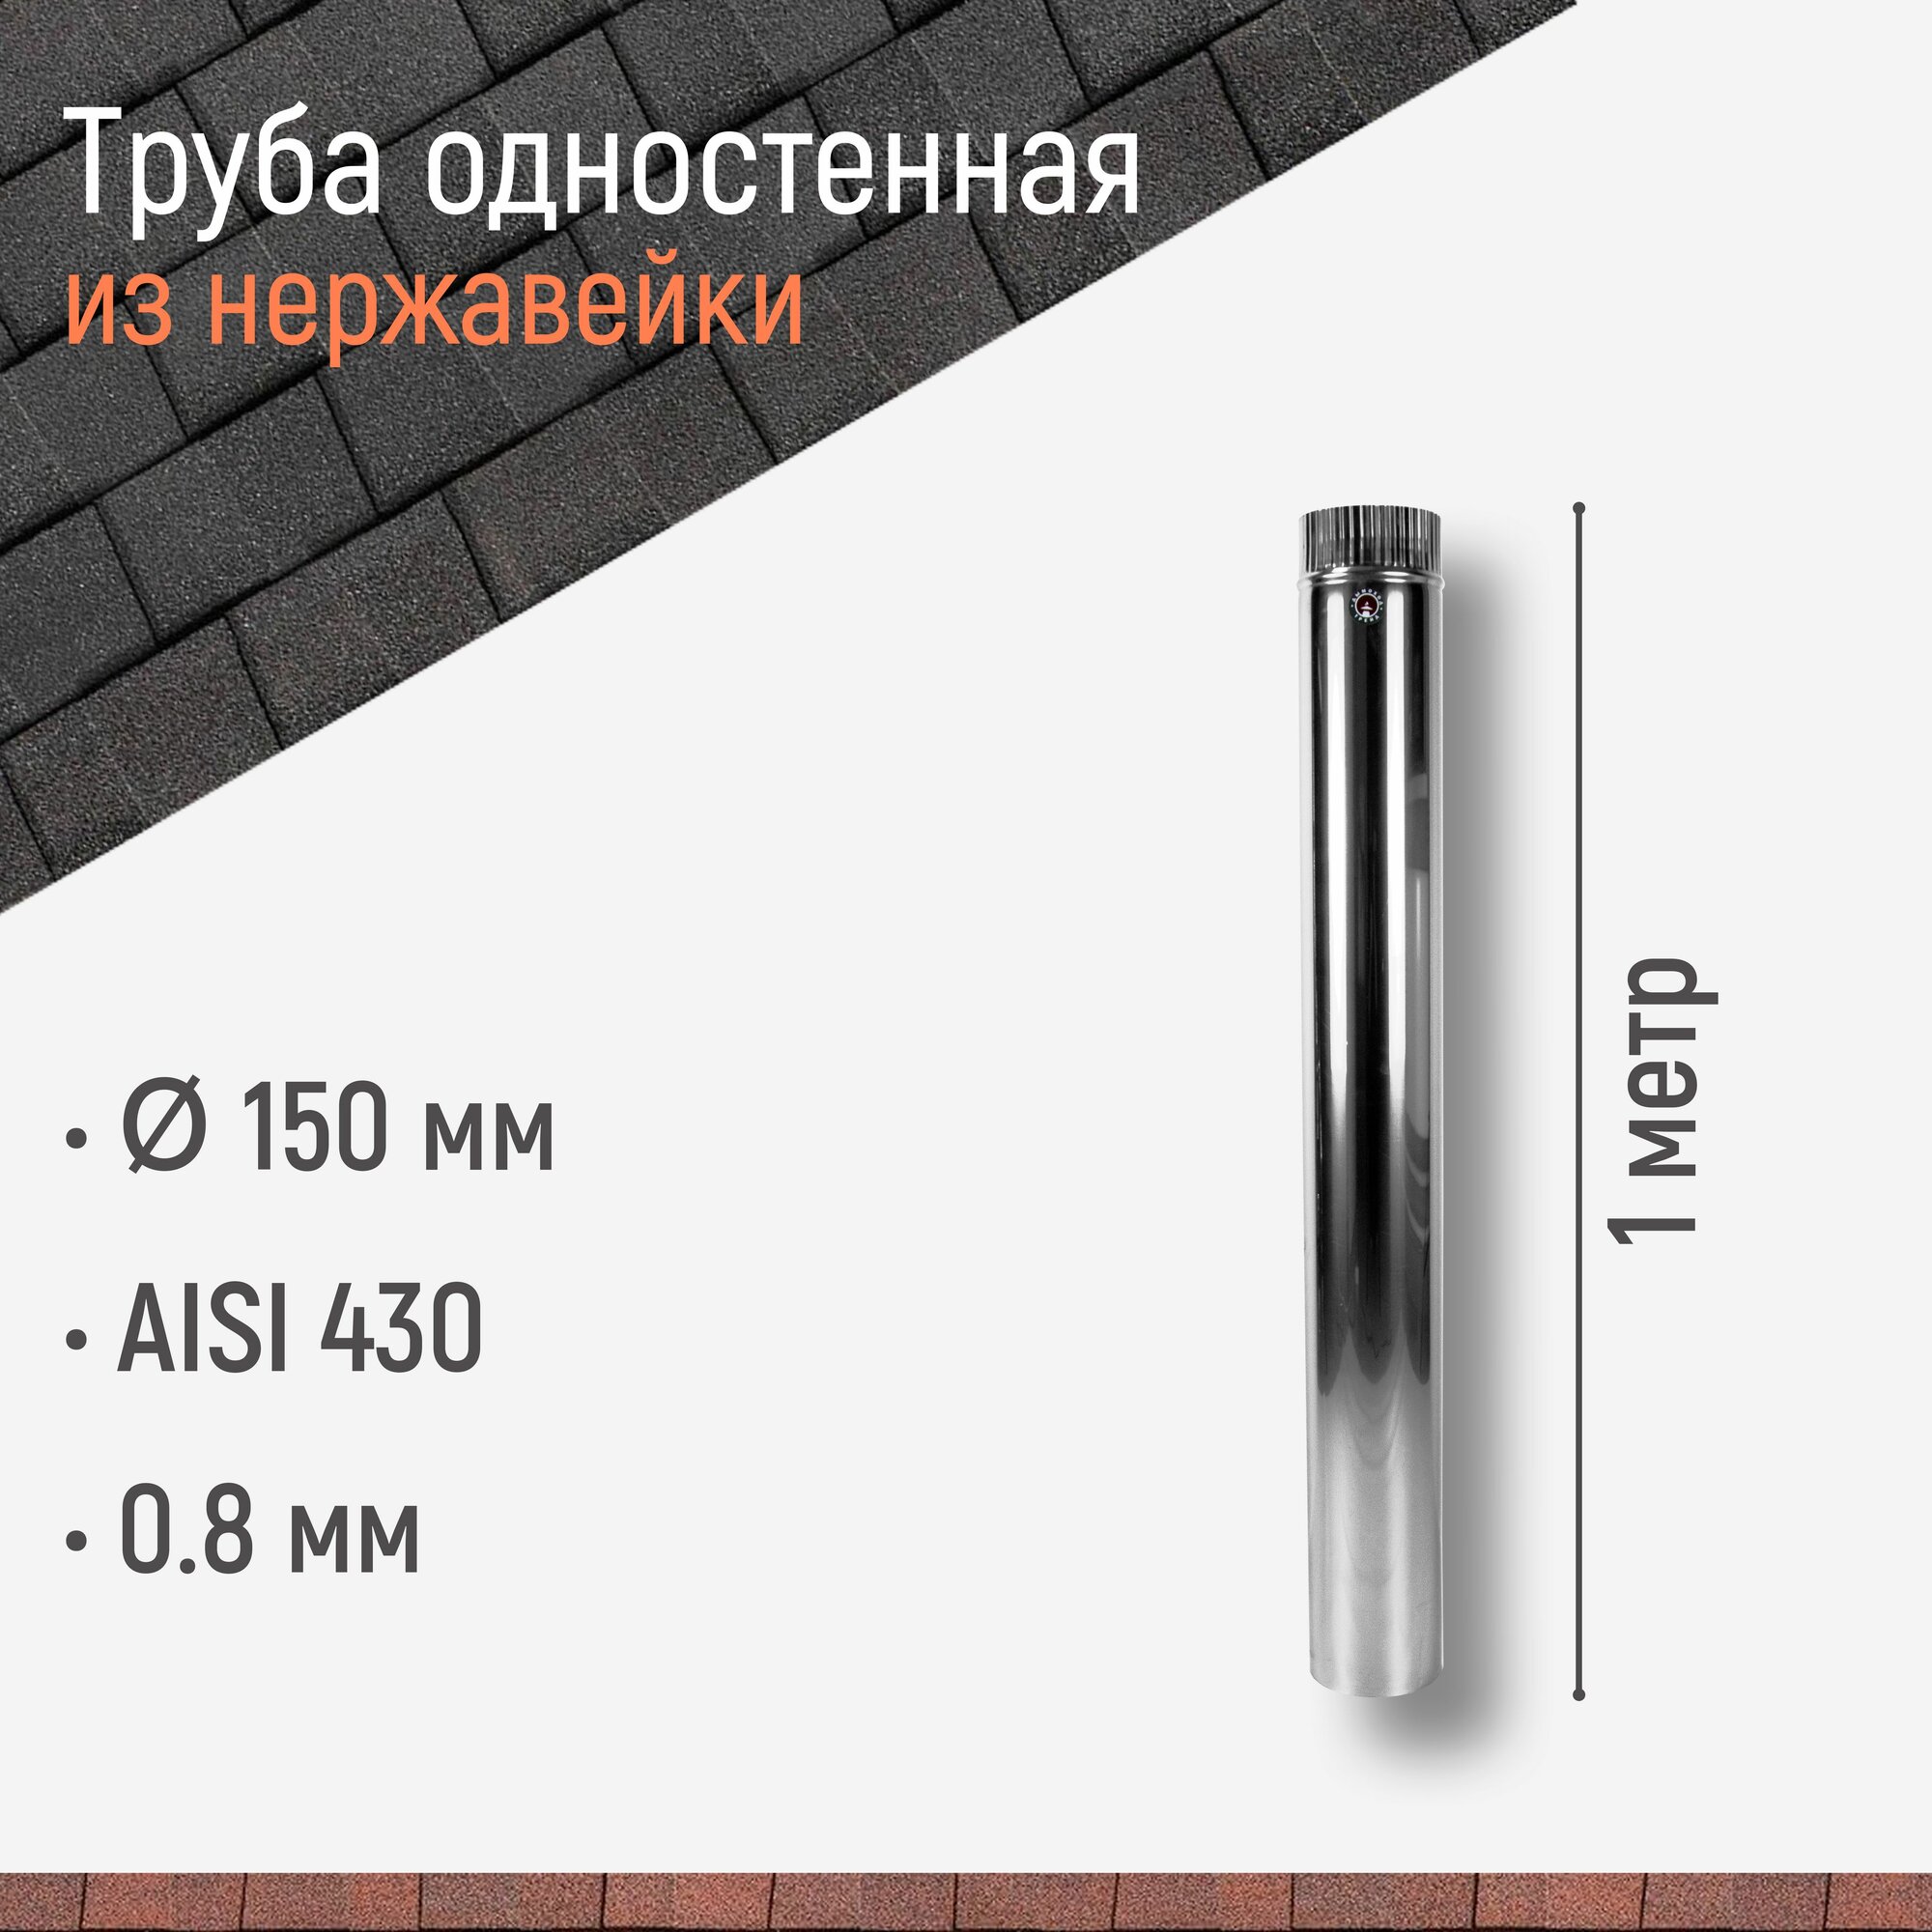 Труба одностенная для дымохода 1 м D 150 мм из нержавейки AISI 430 толщиной 0.8 мм